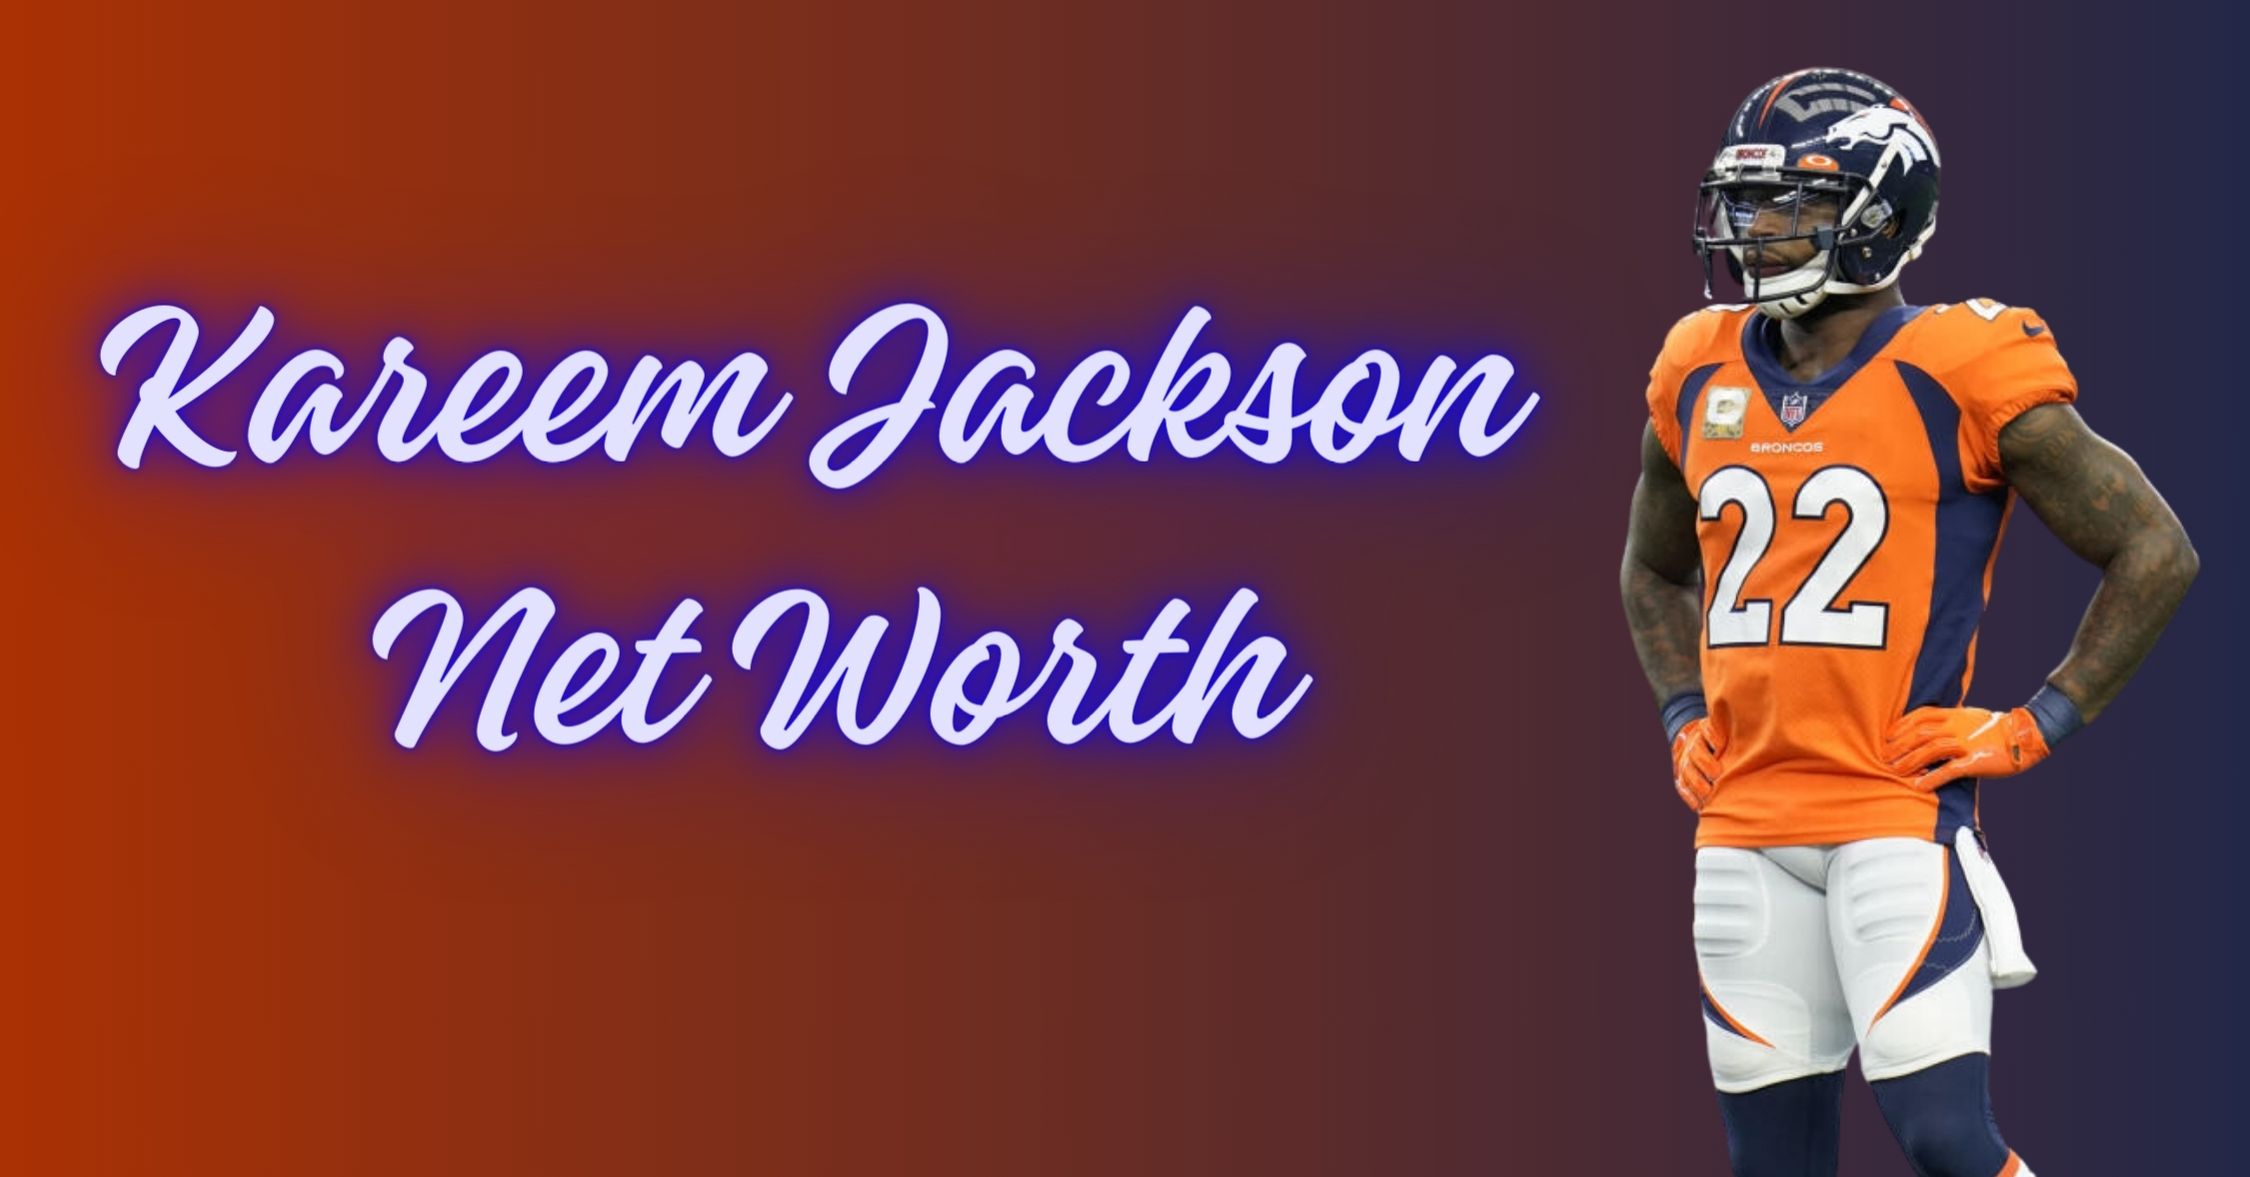 Kareem Jackson